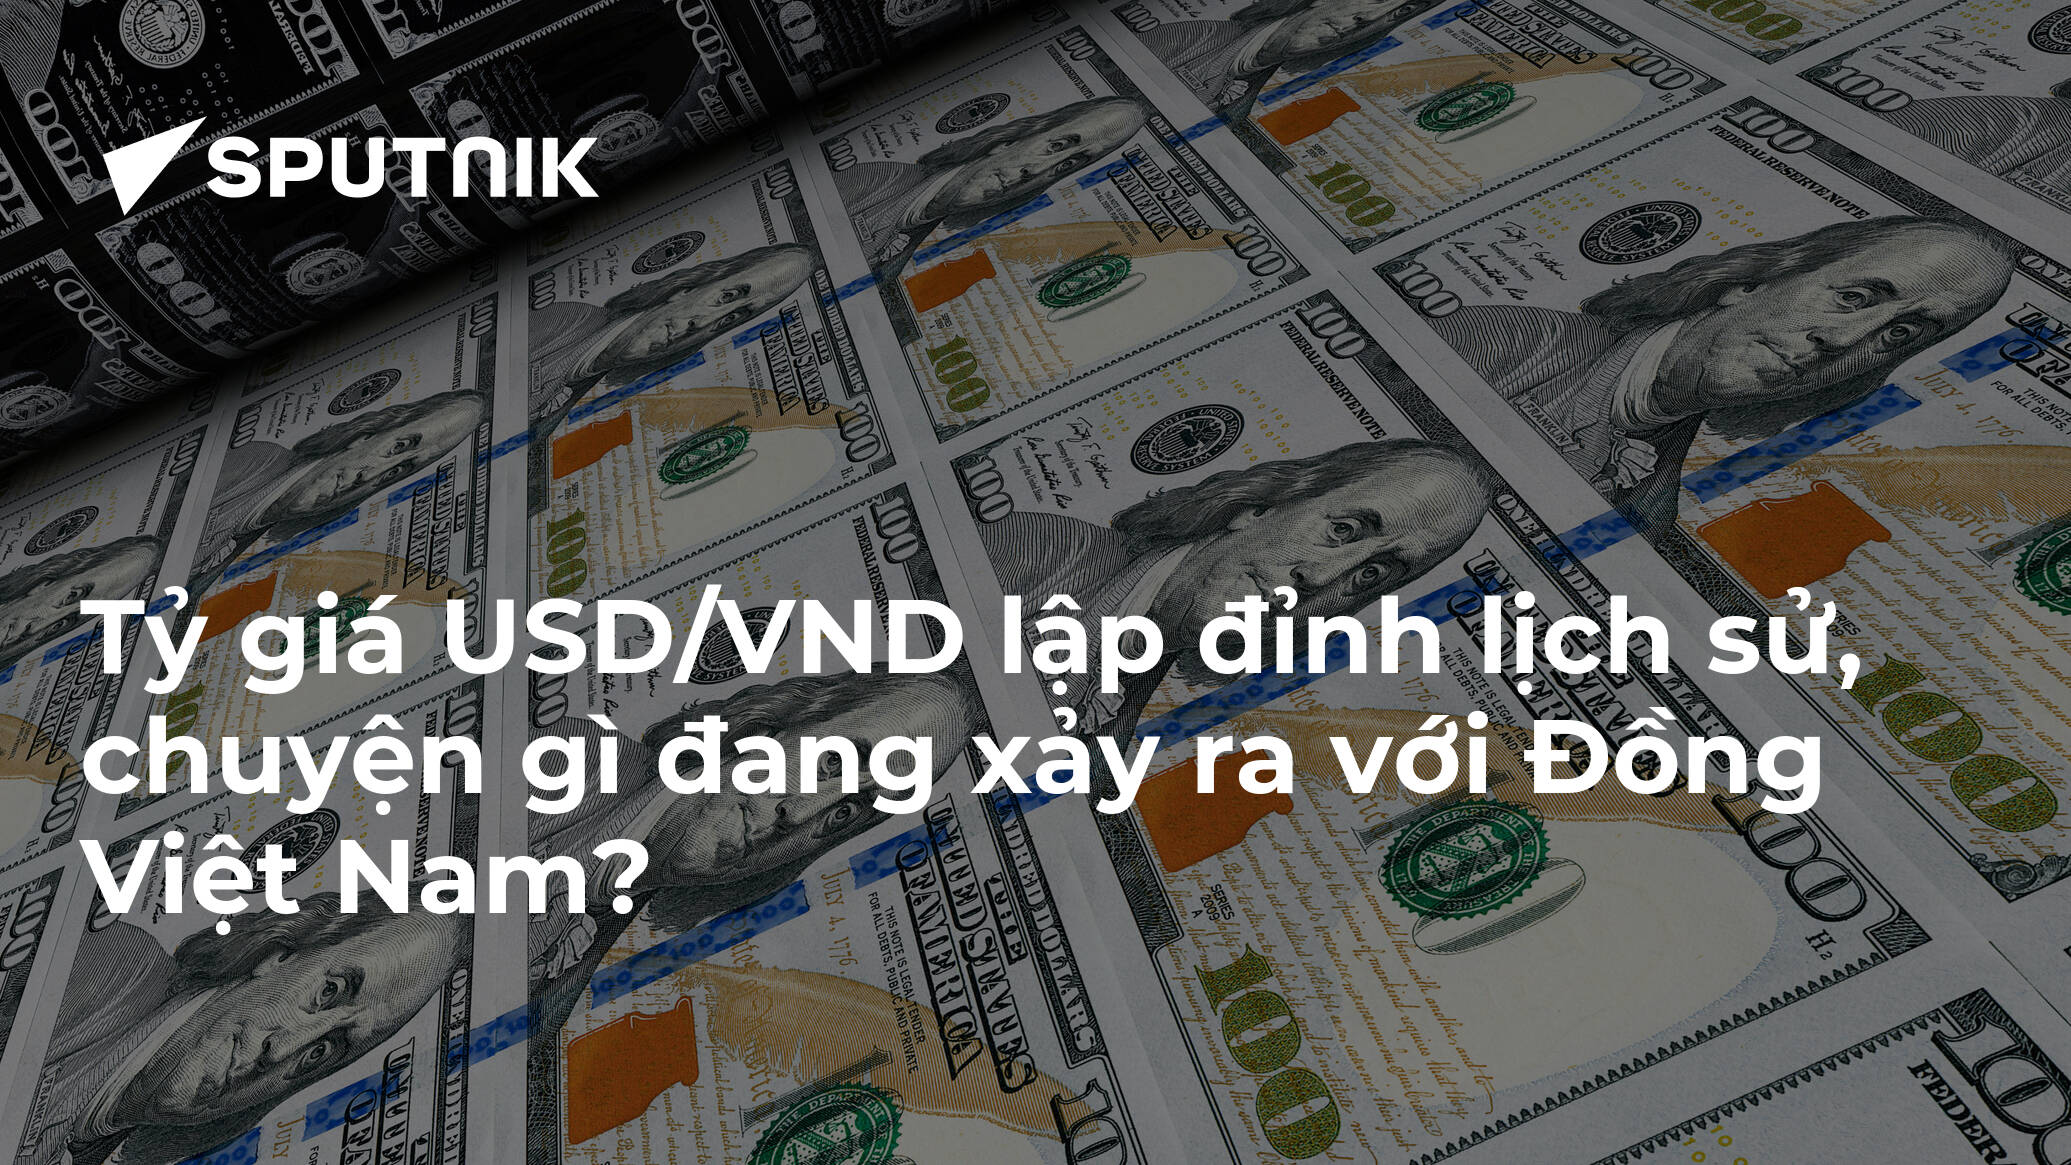 Tỷ giá USD/VND lập đỉnh lịch sử, chuyện gì đang xảy ra với Đồng Việt Nam?